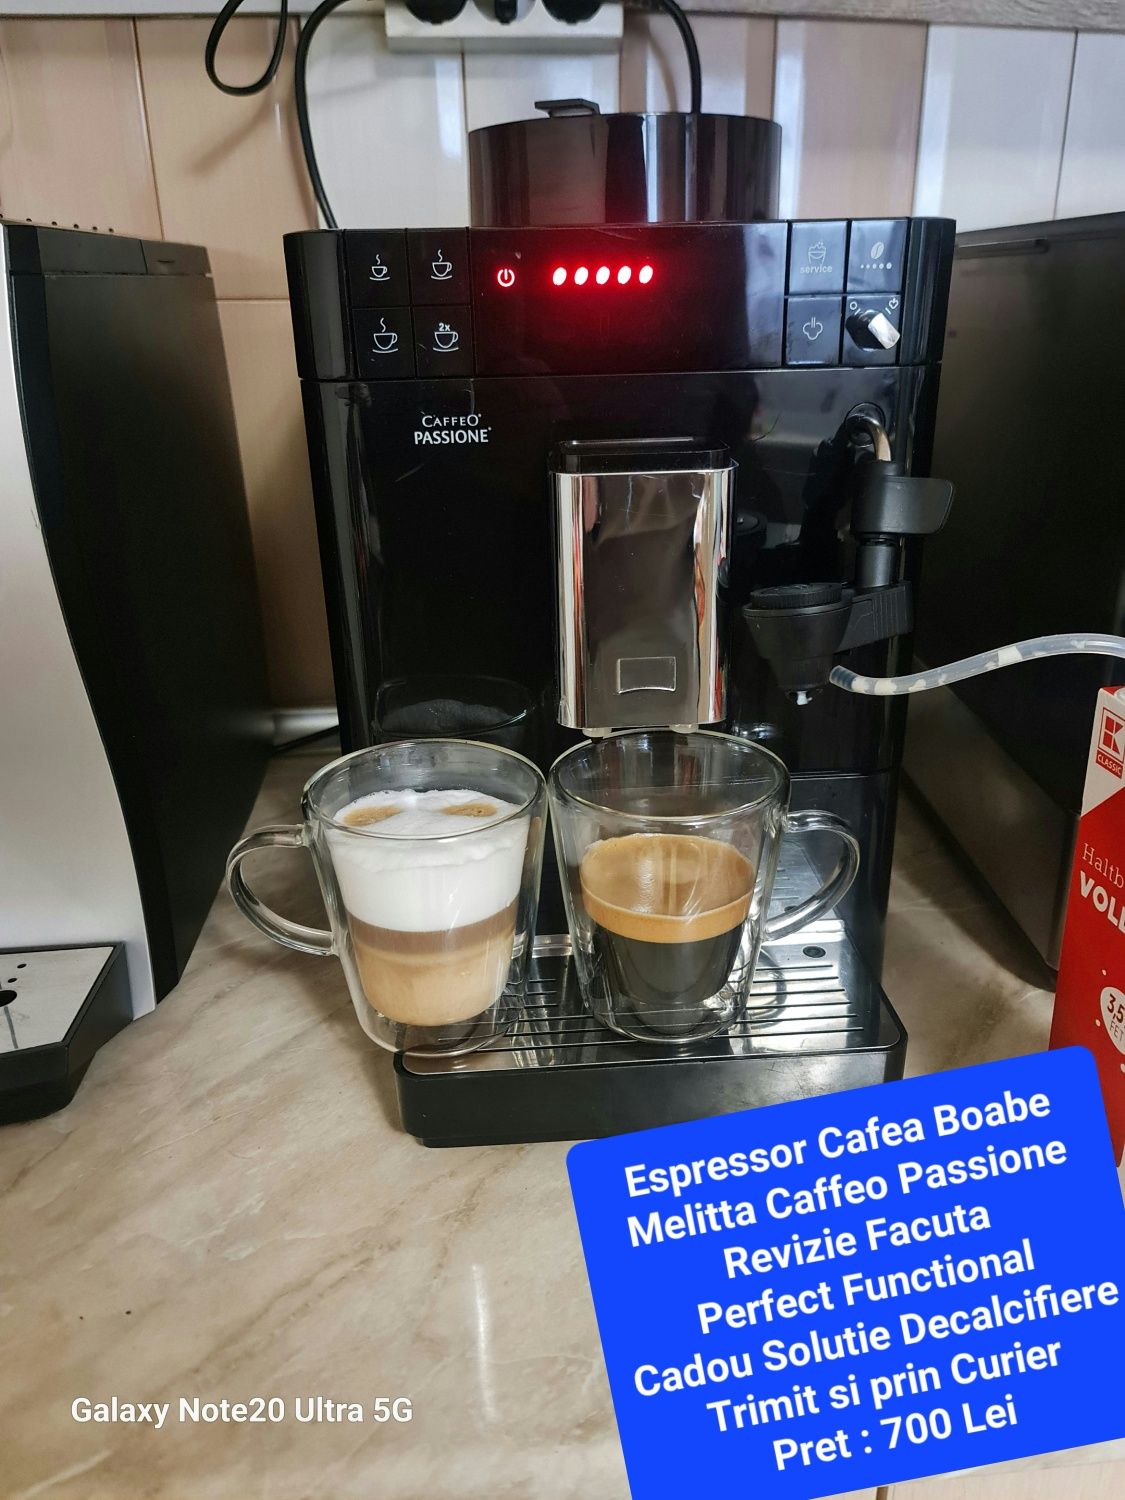 Espressoare Cafea Boabe / Aparate Cafea